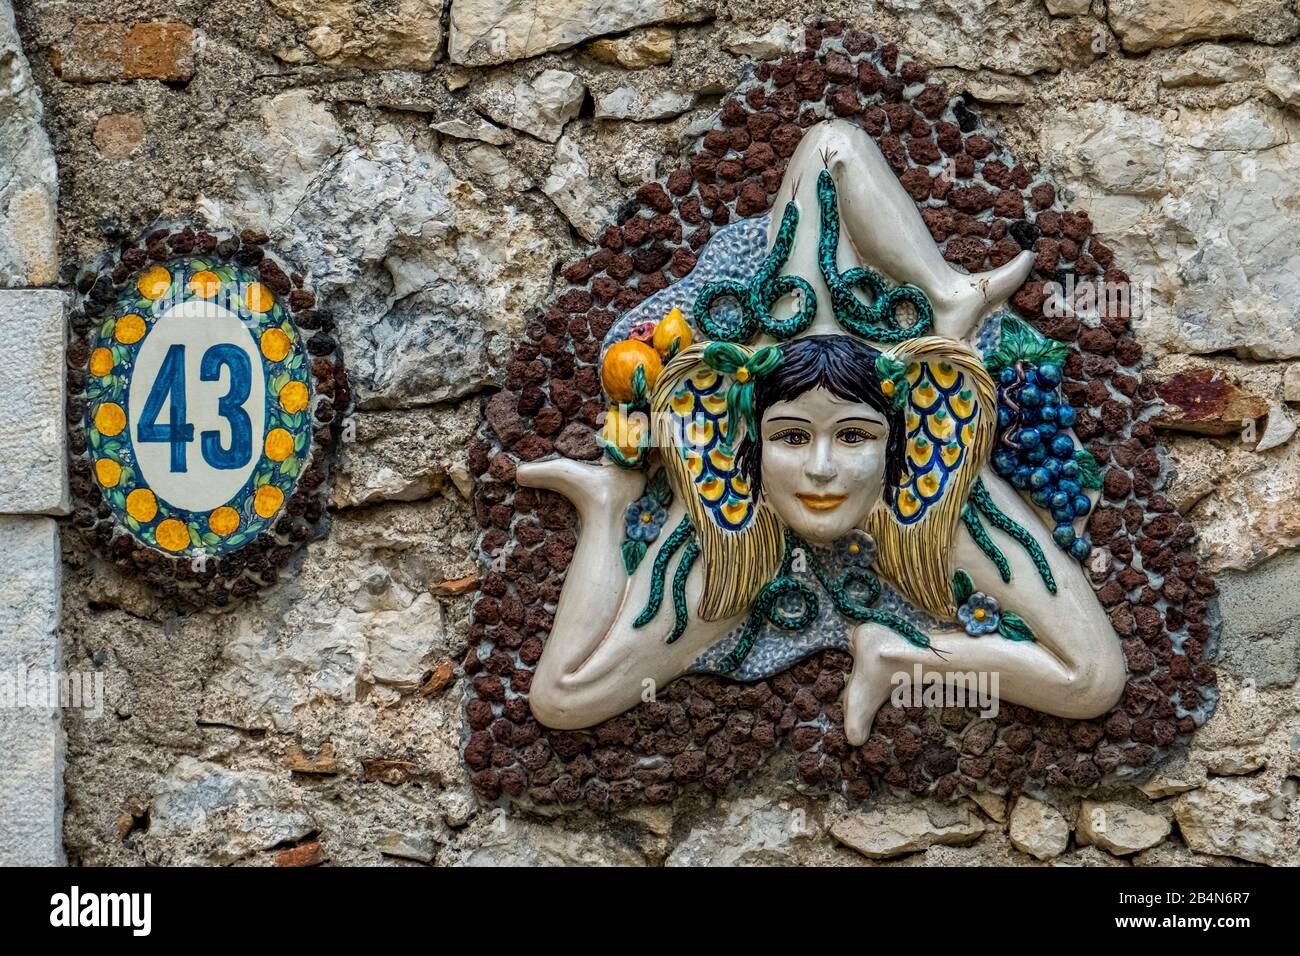 Maison en céramique ornée et panneau de porte, Trinacria, le symbole à trois pattes de la Sicile, Taormine, Italie du sud, Europe, Sicile, Italie Banque D'Images